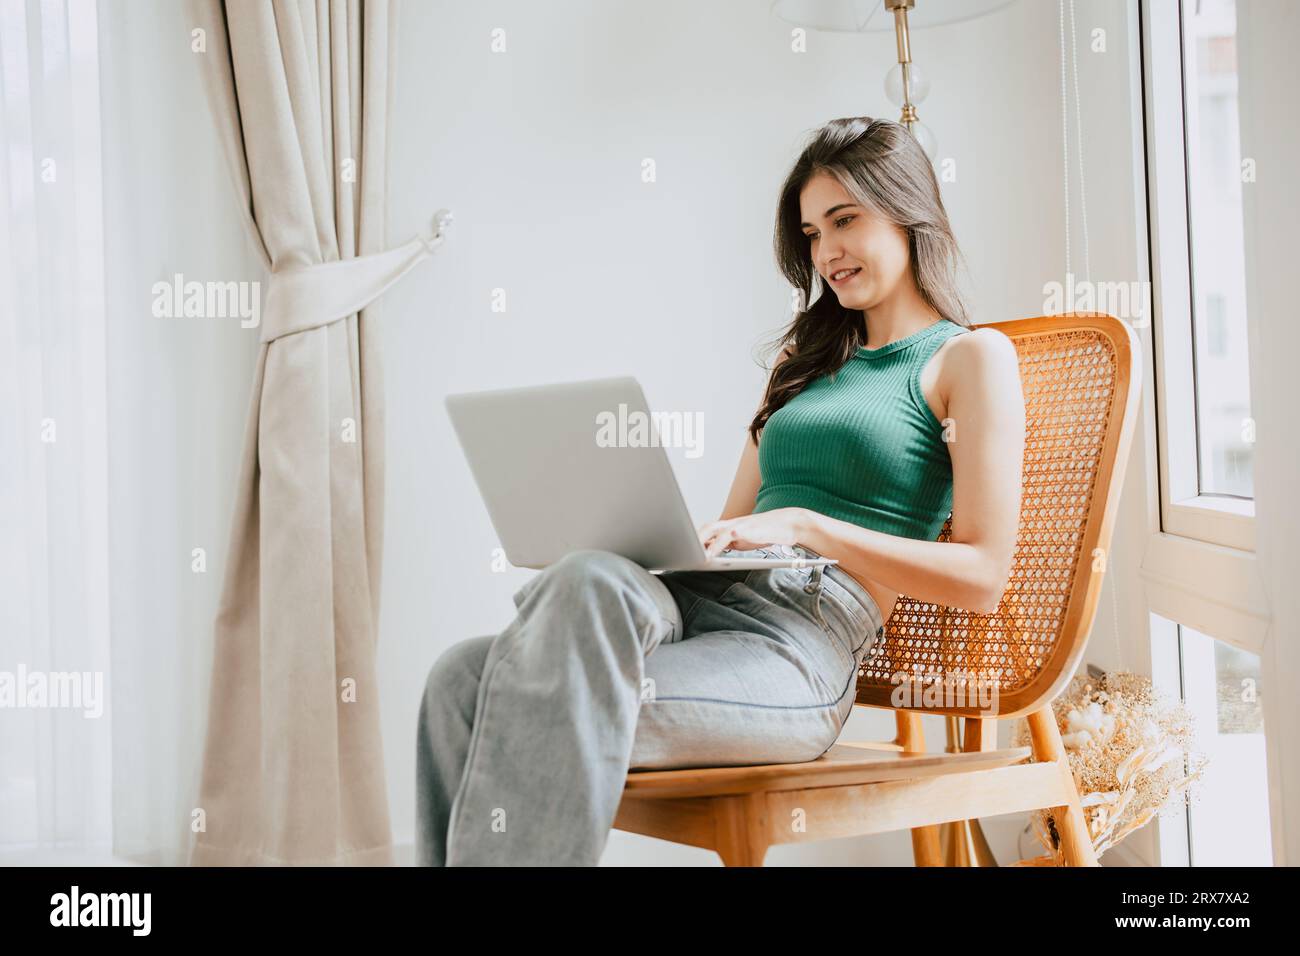 giovane donna felice sorridente digitando al computer portatile rilassarsi al coperto nel salotto di casa. persone che amano il tempo libero con dispositivi tecnologici moderni Foto Stock